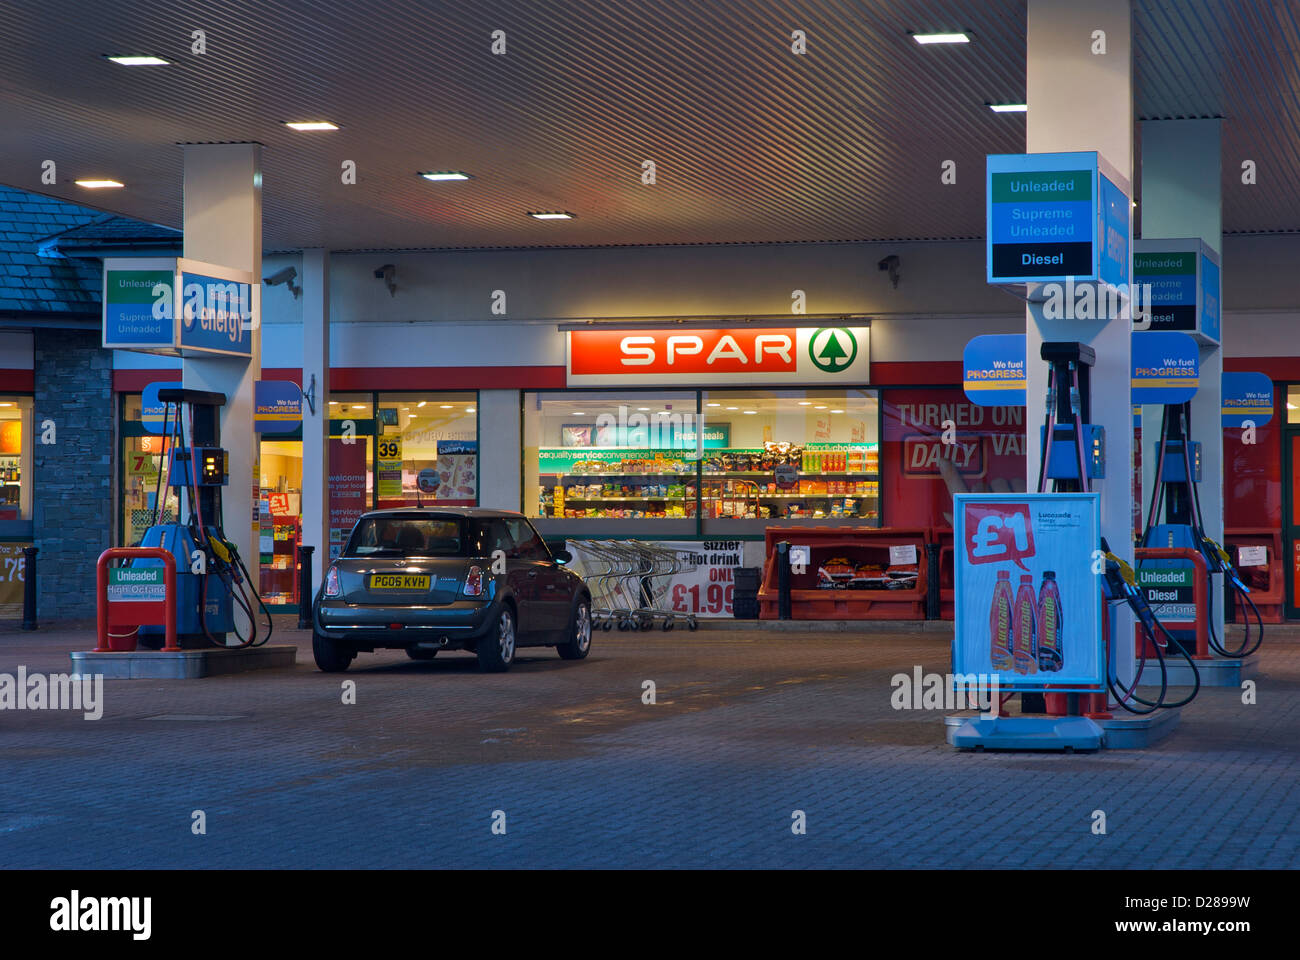 Gasolinera Esso y tienda Spar en Troutbeck, Puente, Cumbria, Inglaterra Foto de stock